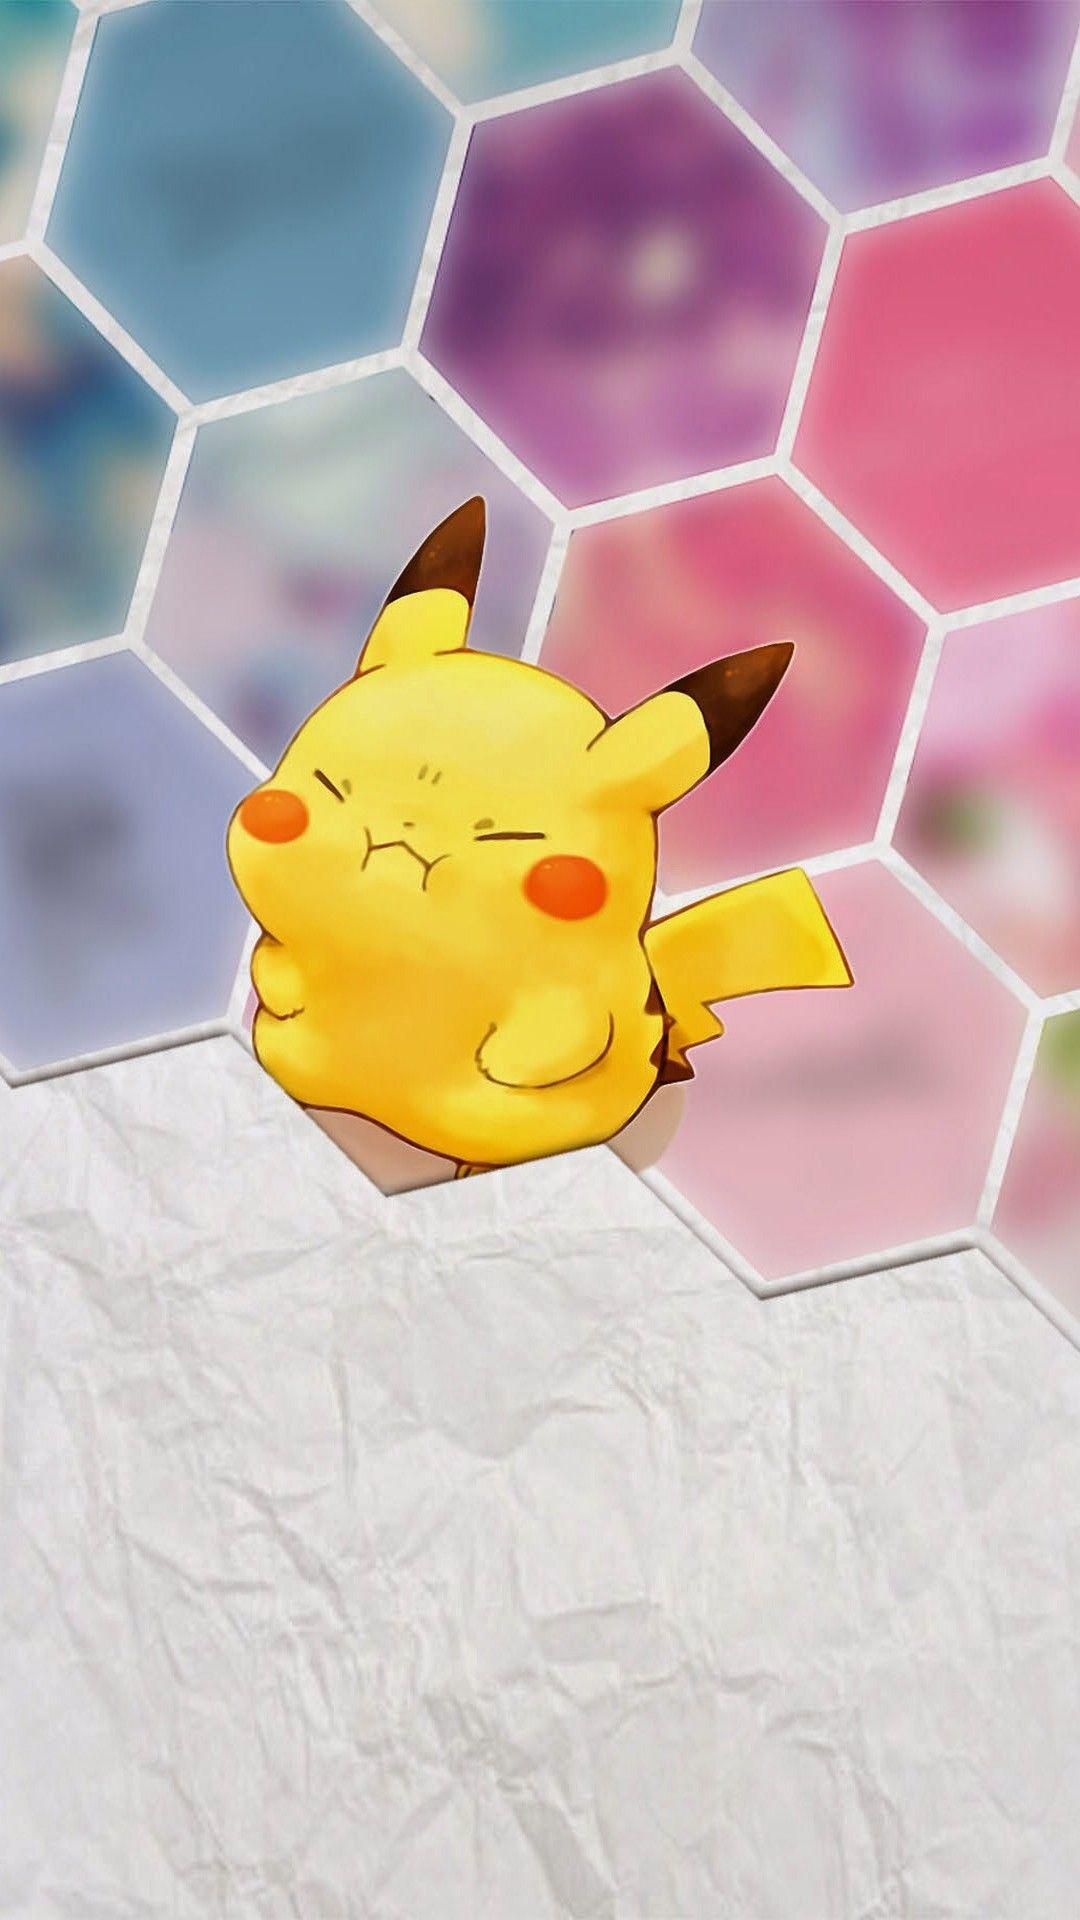 Hình nền Pikachu dễ thương miễn phí 1080x1920 Wide tại Phim Monodomo